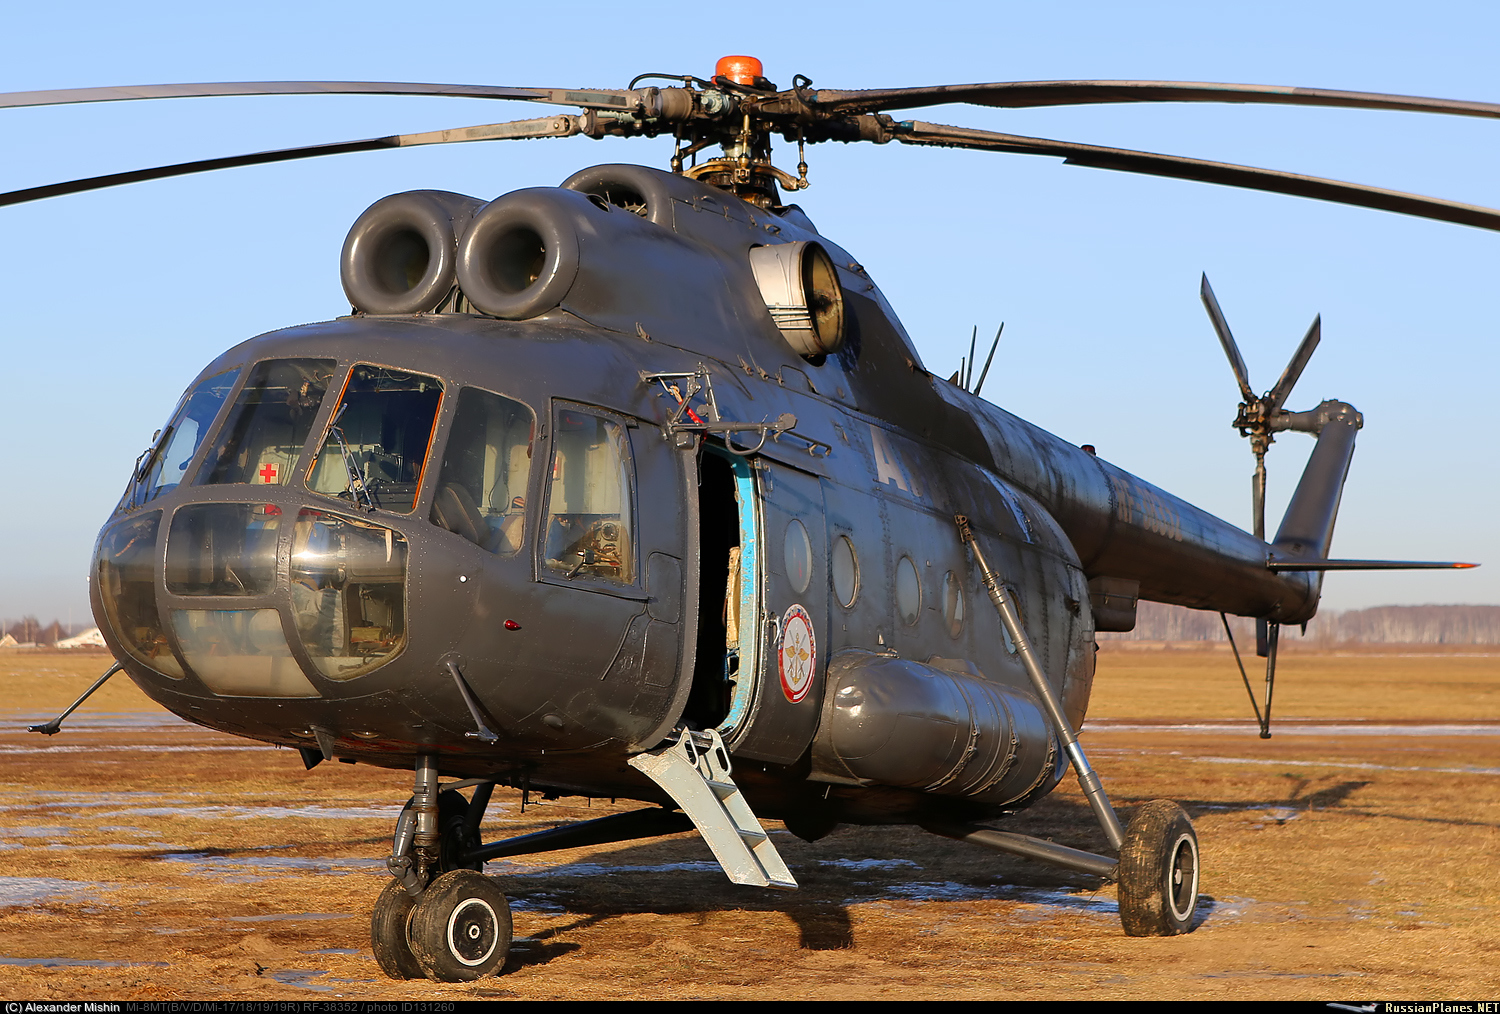 Mi-8T   RF-38352